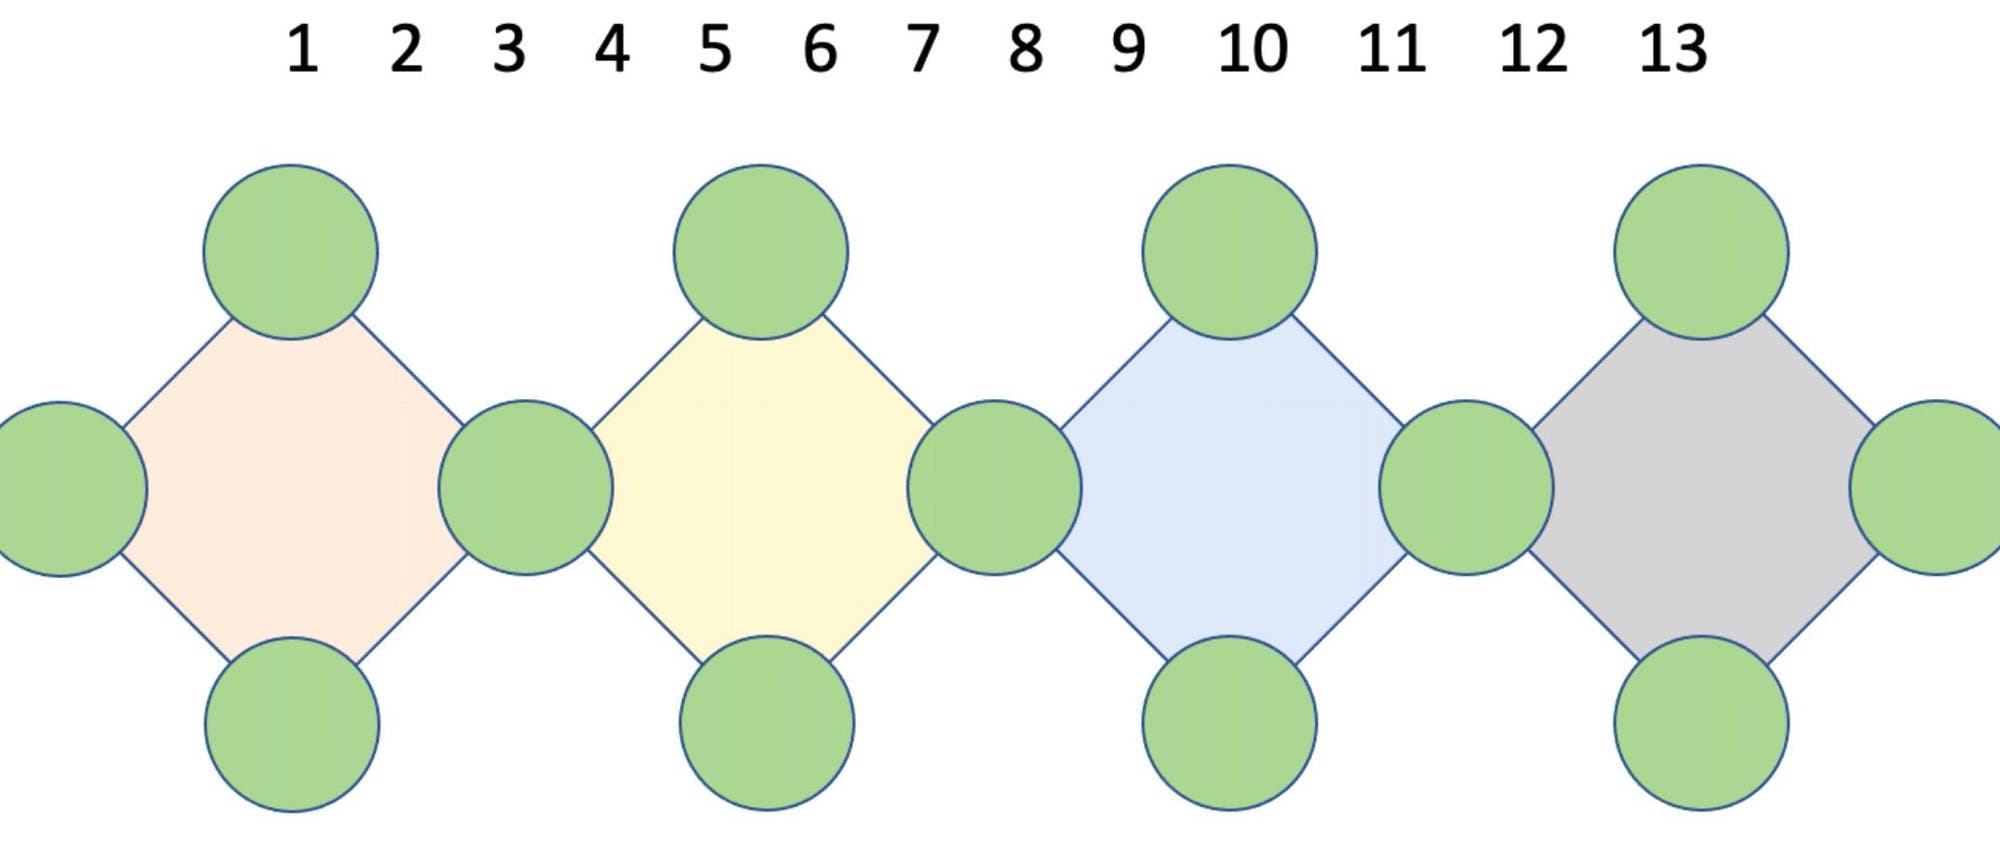 Wie muss man die Zahlen von 1 bis 13 auf die Kreise verteilen?